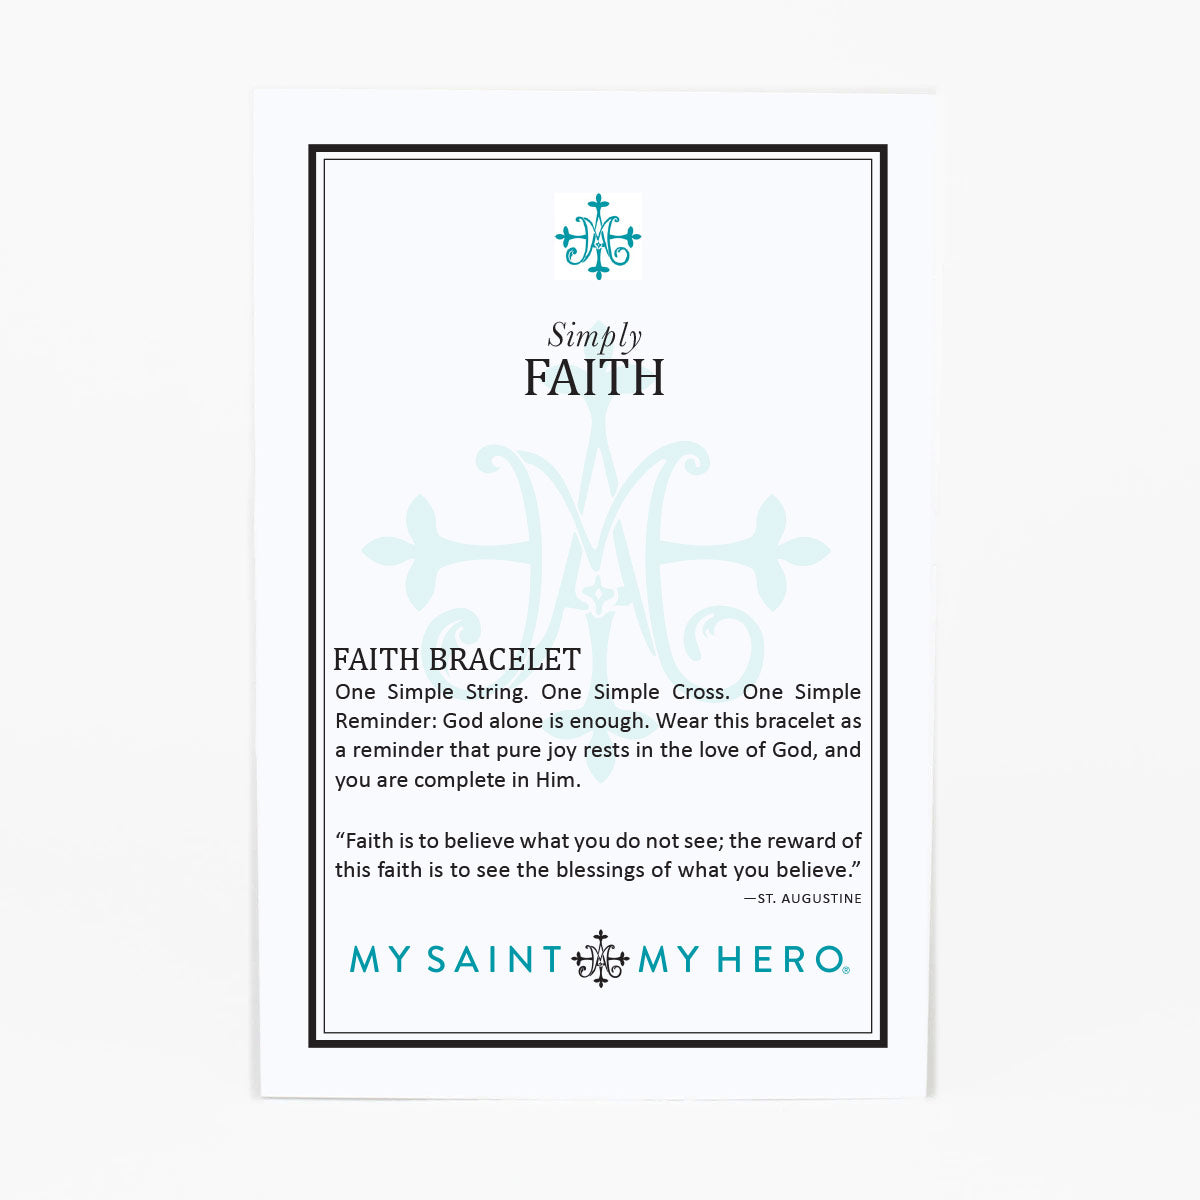 Simply Faith Bracelet by My Saint My Hero